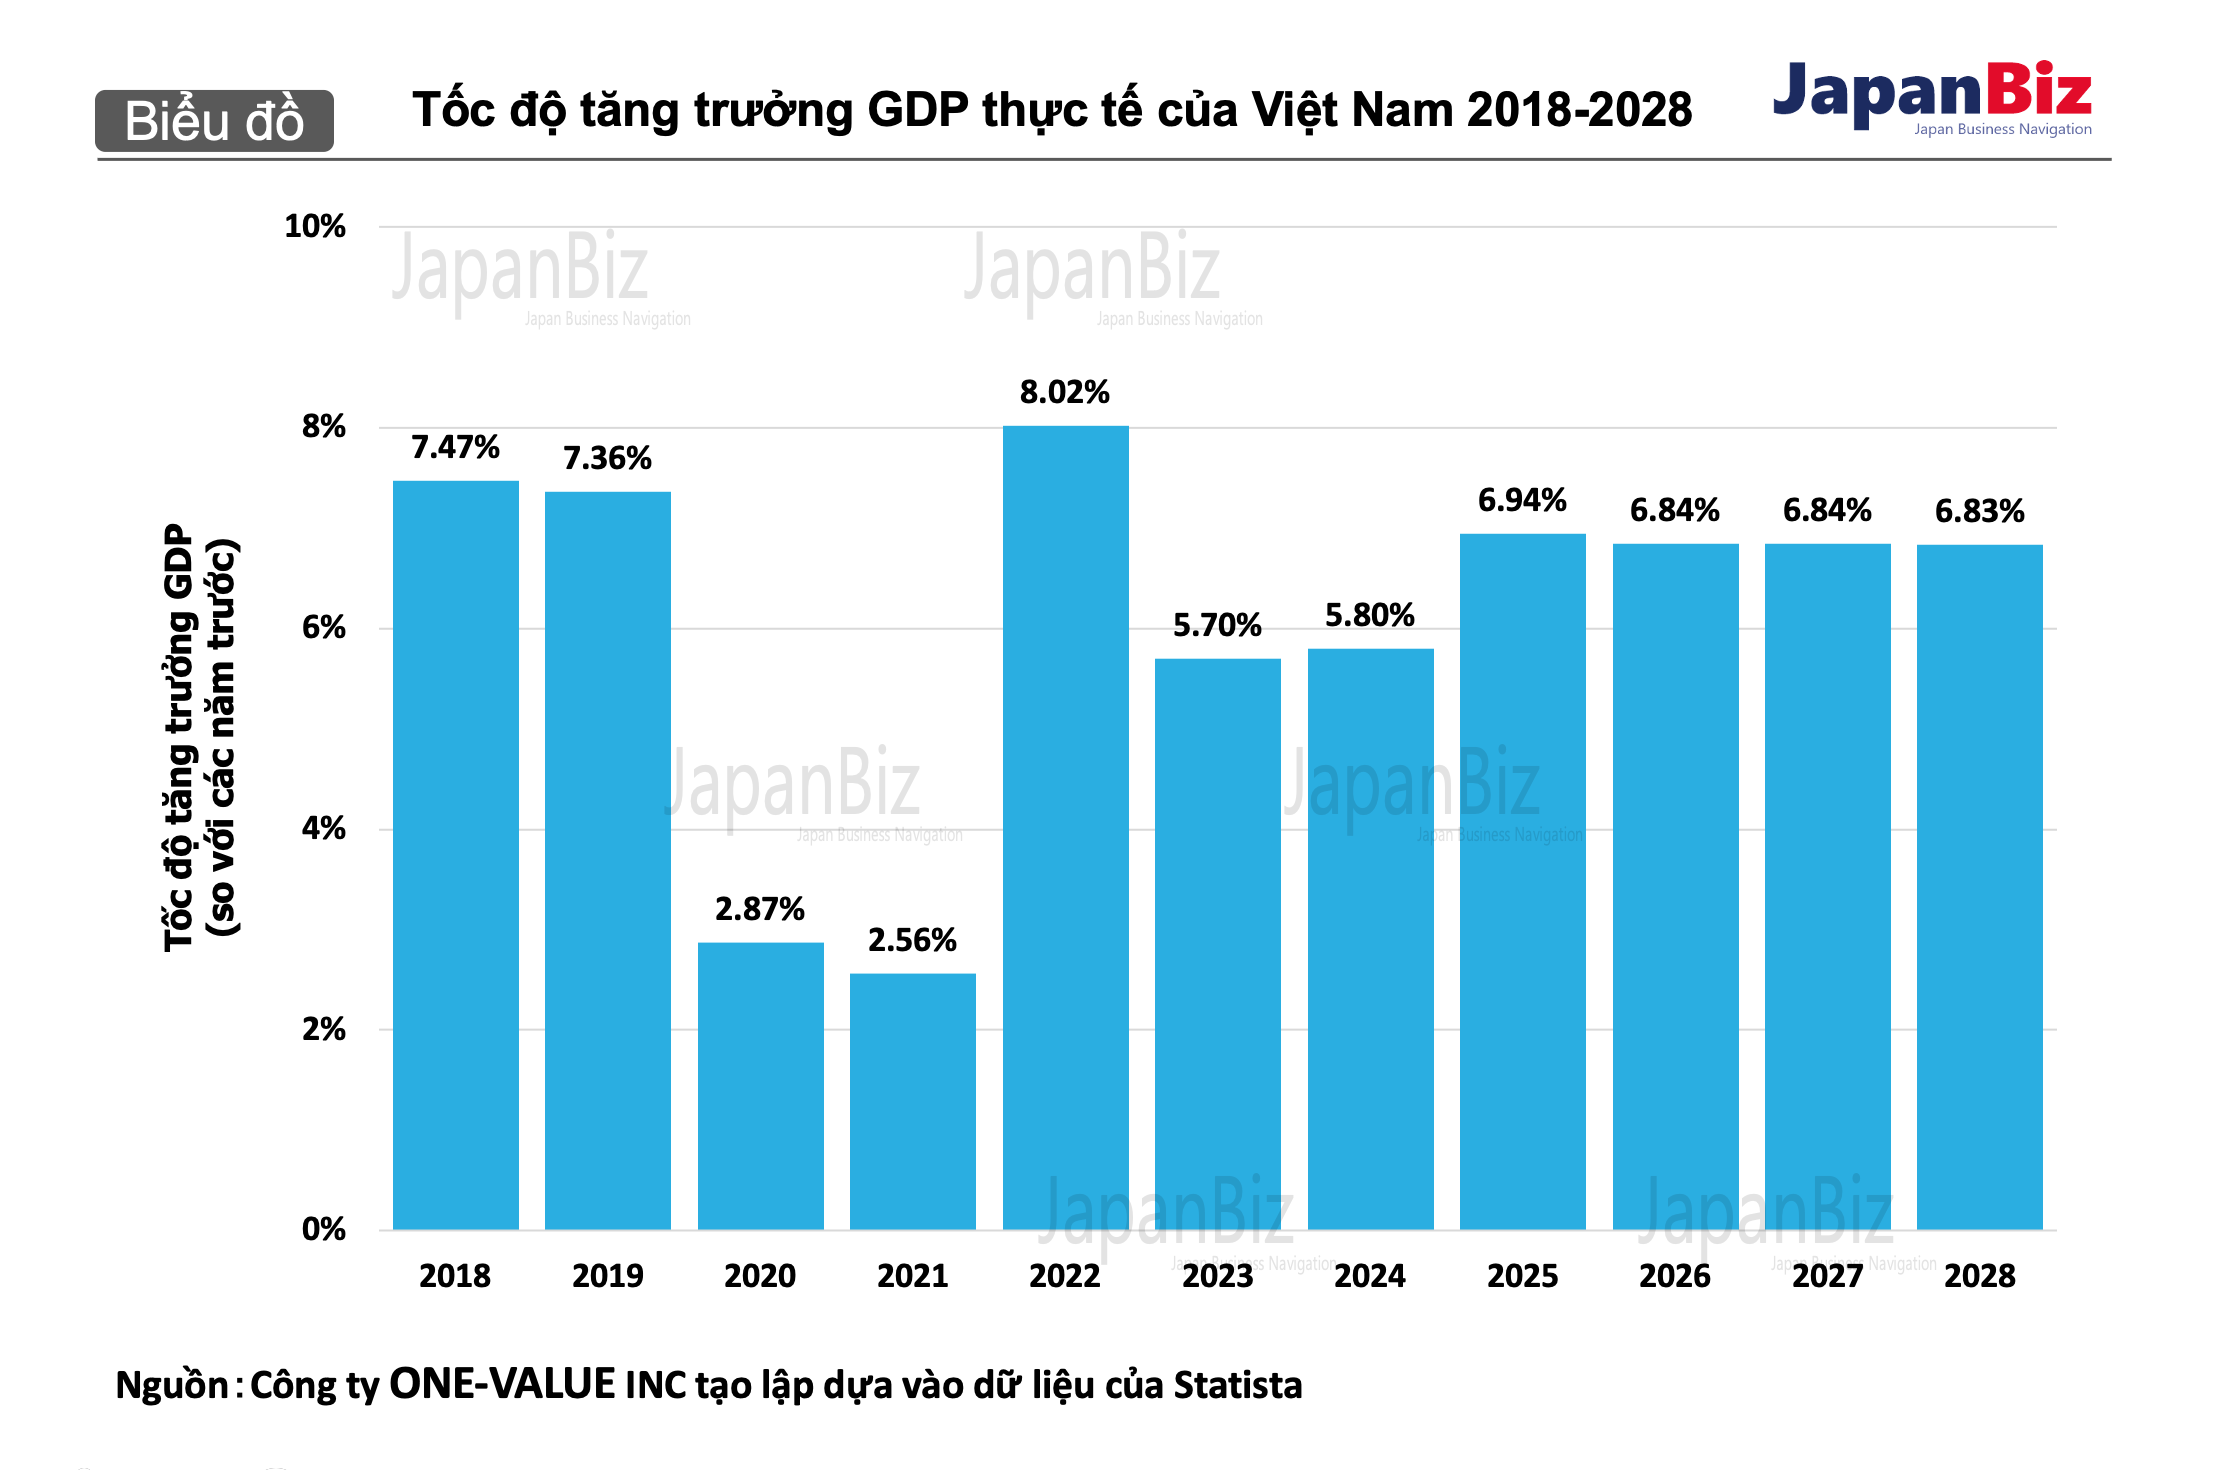 Tốc độ tăng trưởng GDP thực tế của Việt Nam 2018-2028.